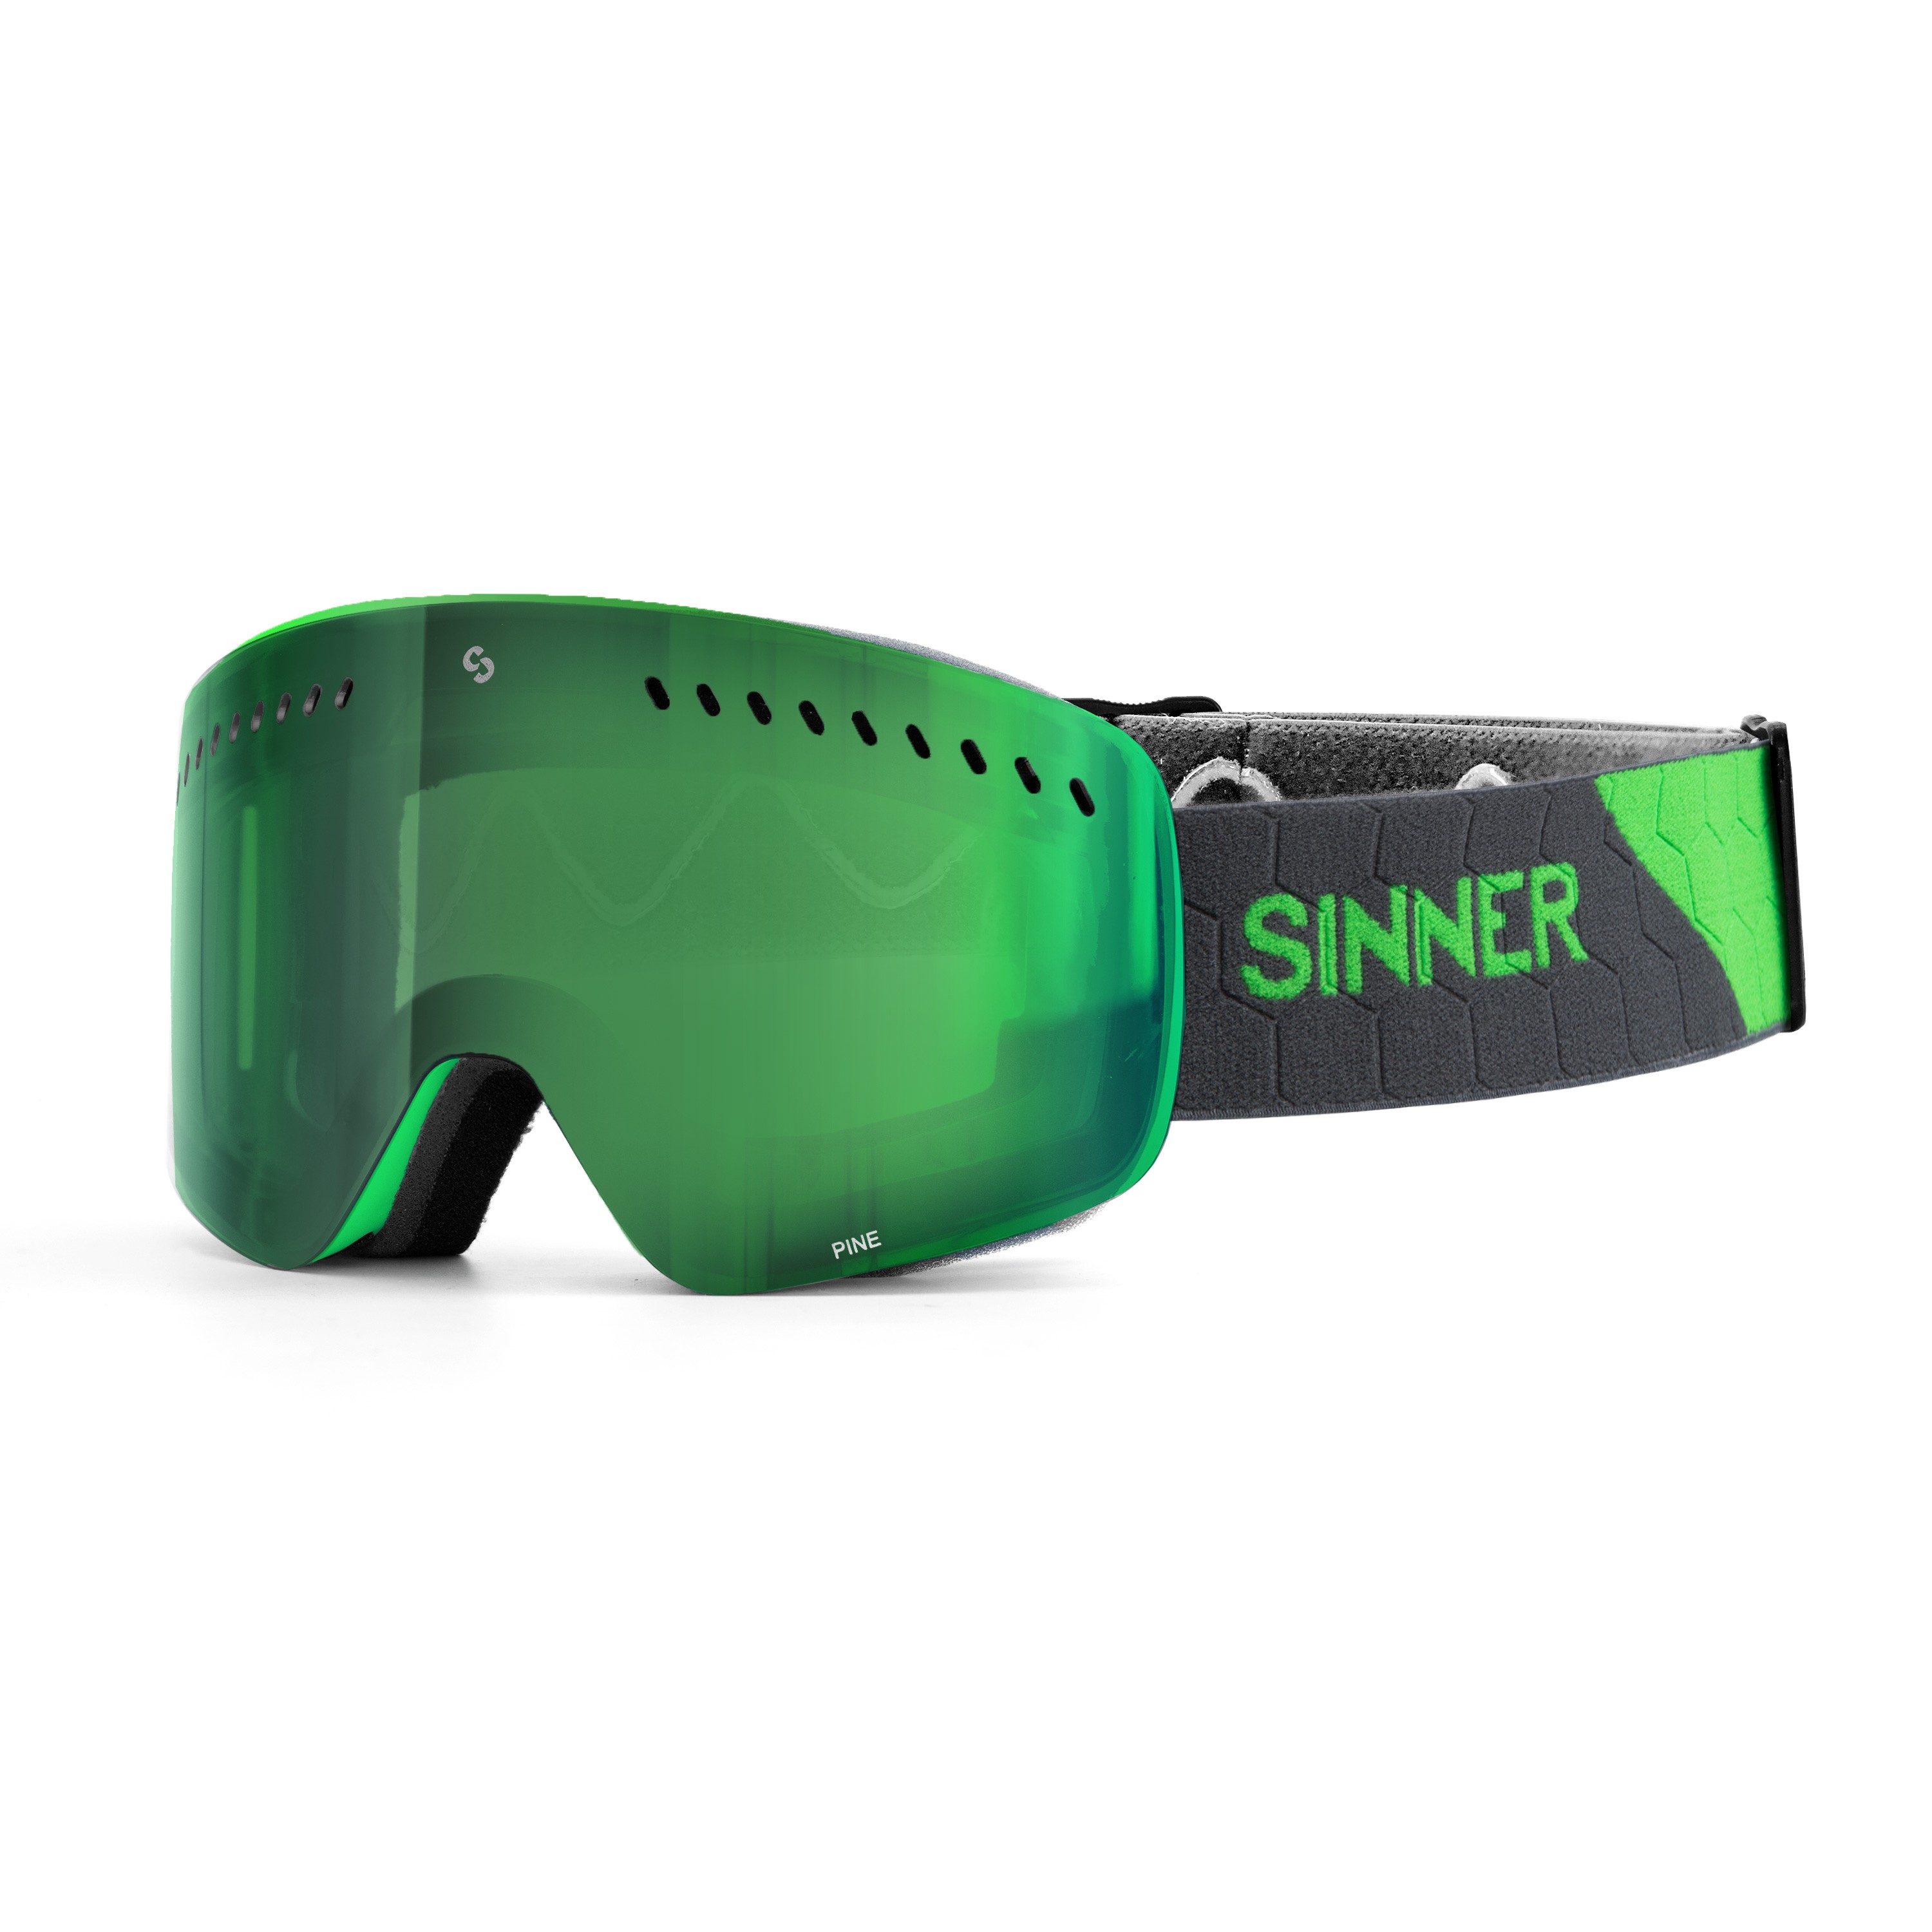 Sinner Pine Skibril - Groen Frame + Groene Spiegellens